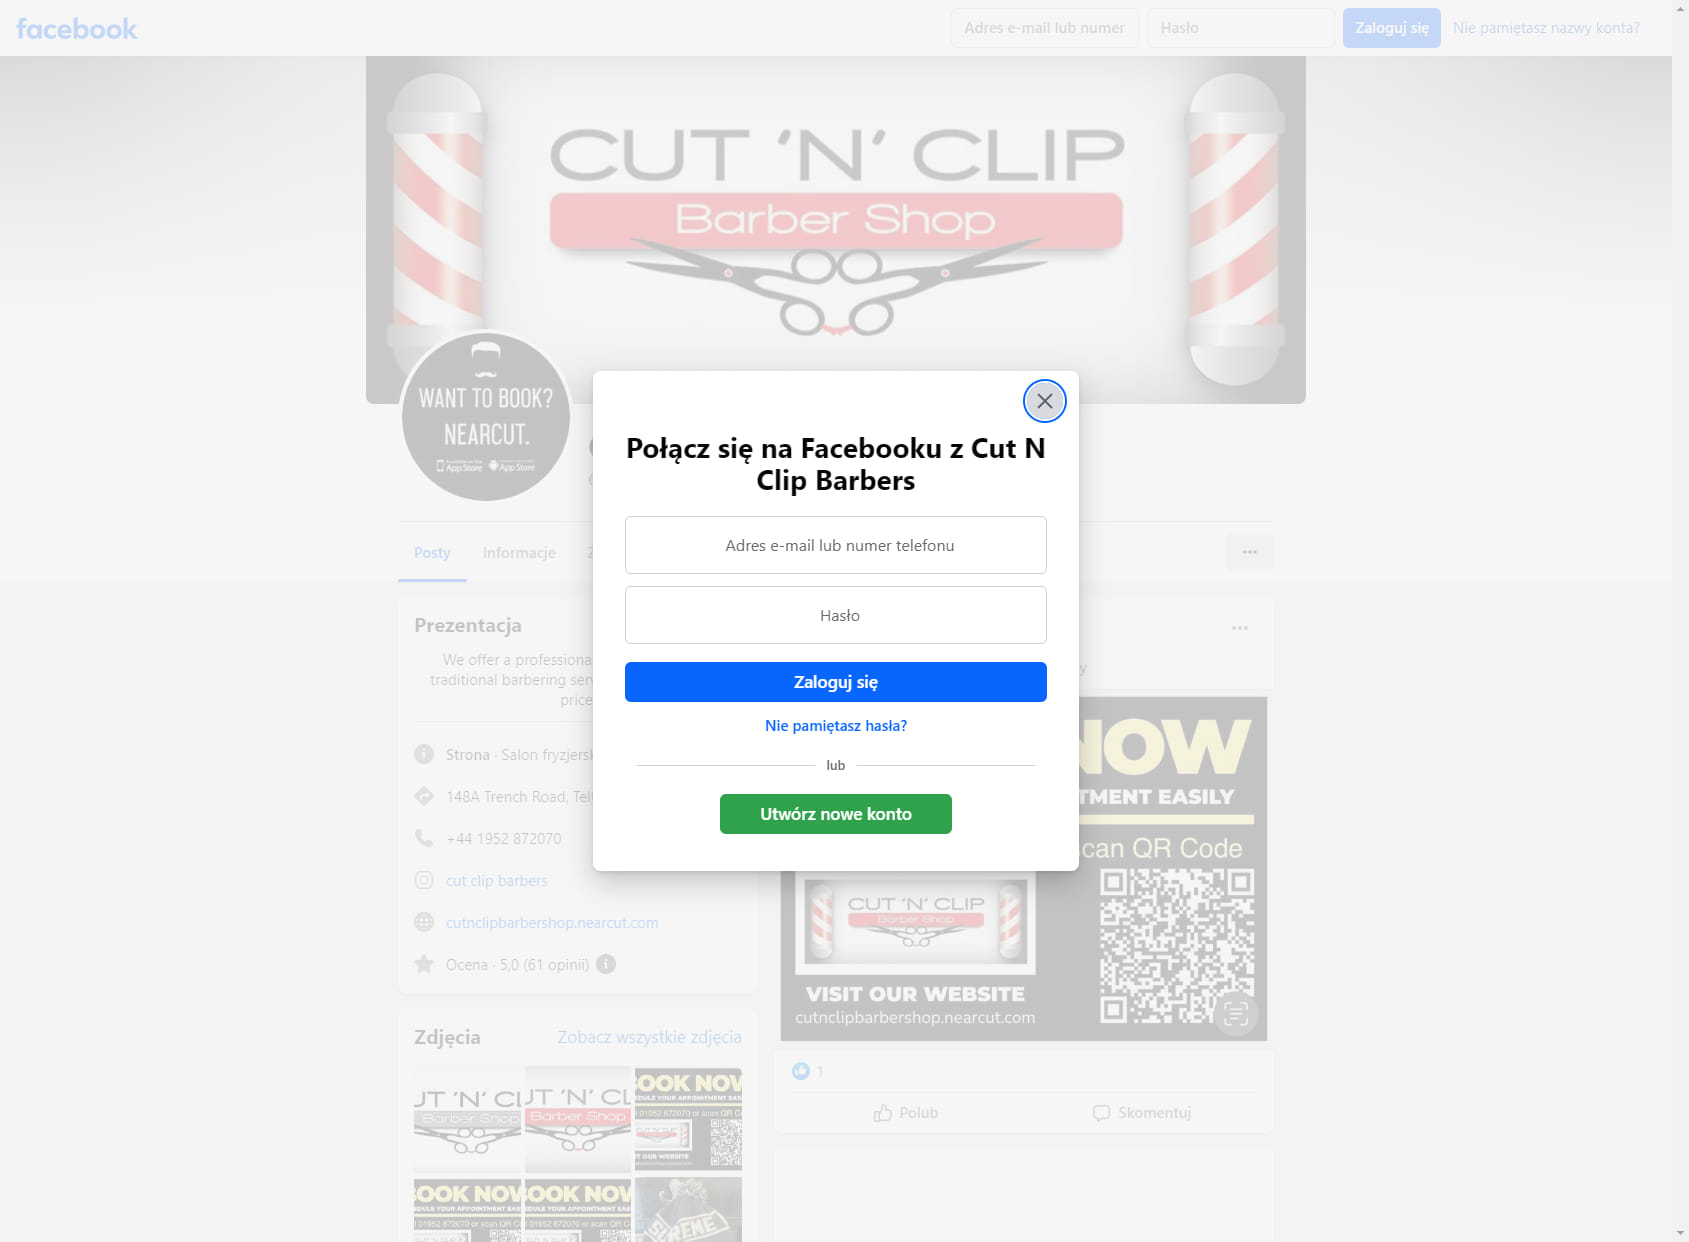 Cut 'N’ Clip Barbers